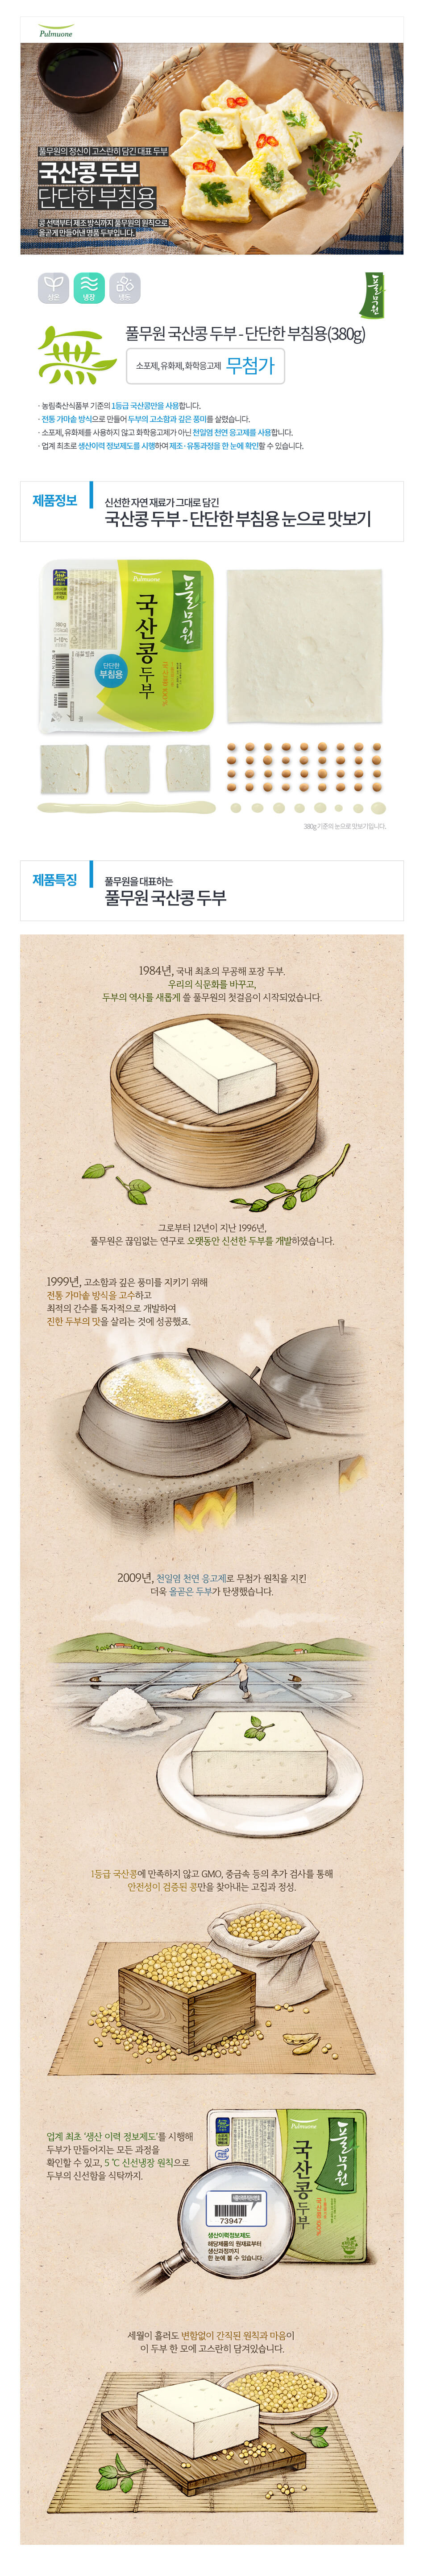 韓國食品-[풀무원] 단단한부침용두부 300g